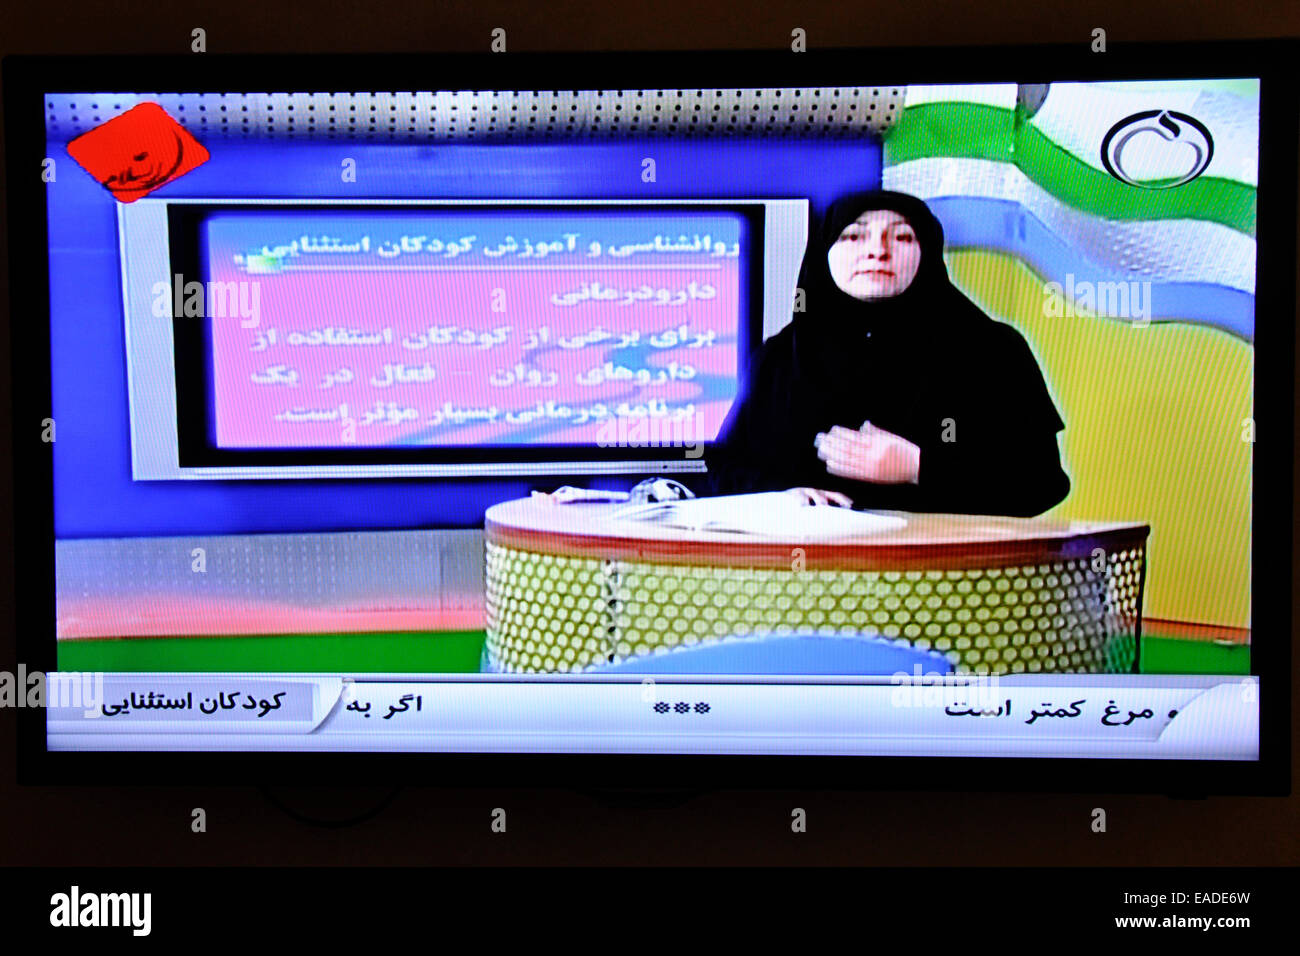 Iran, iranische Fernsehen, Lautsprecher Stockfotografie - Alamy